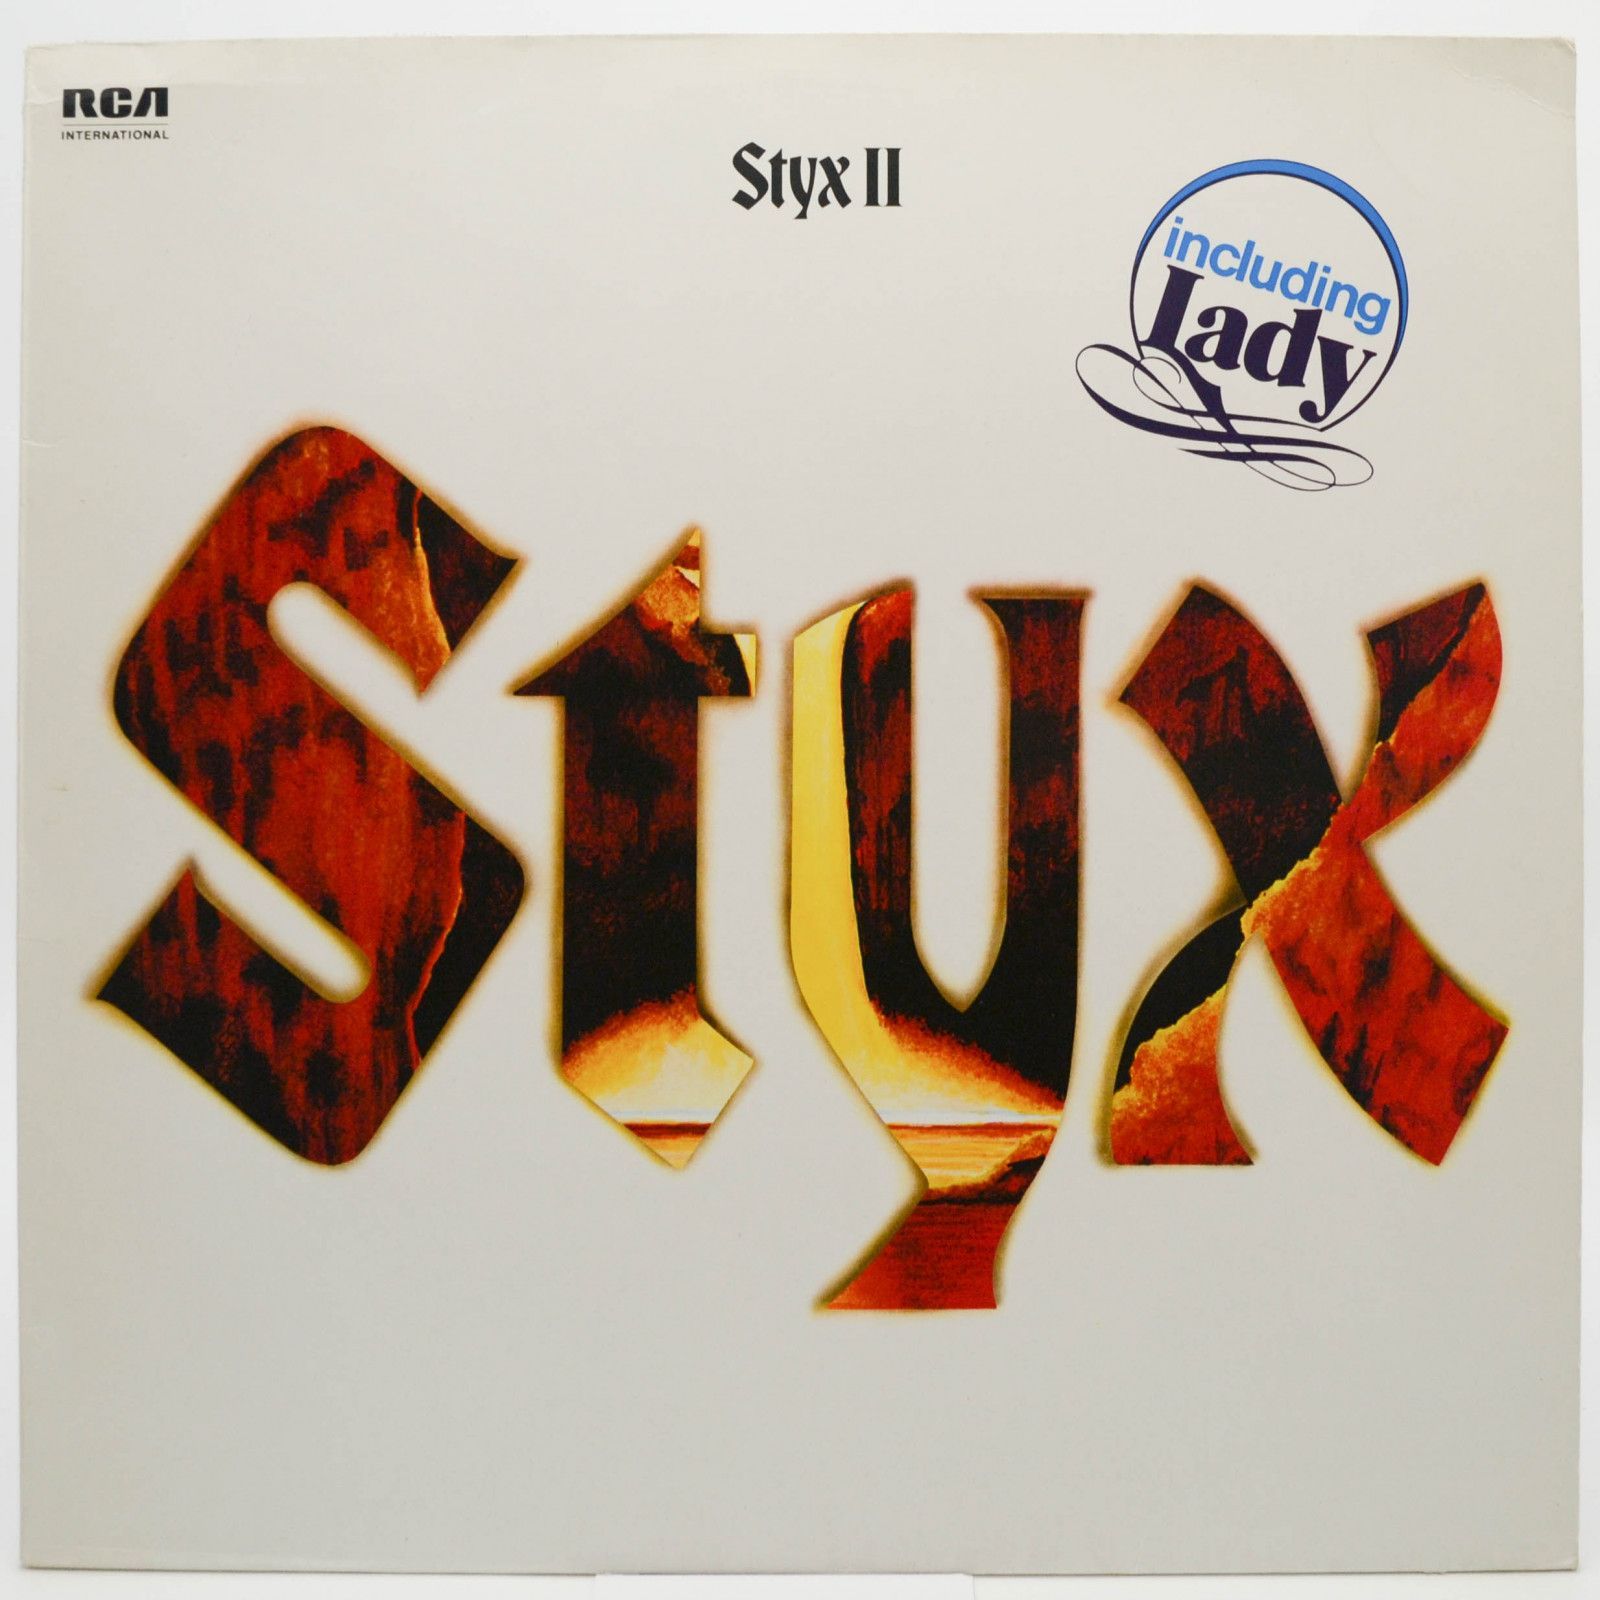 Styx — Styx II, 1973